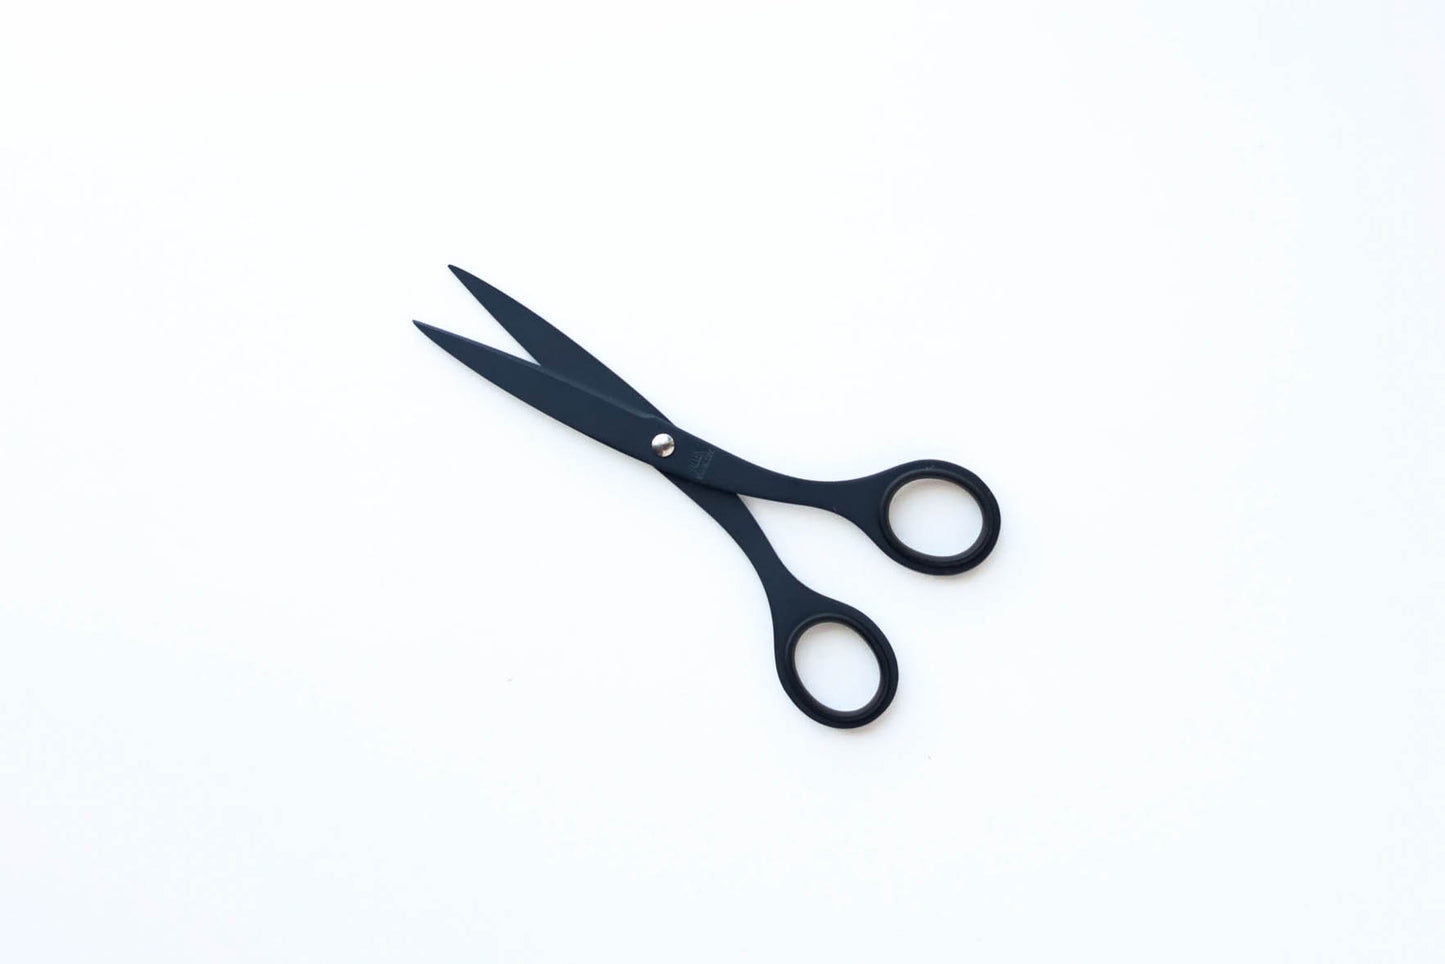 Allex Stainless Steel Scissors